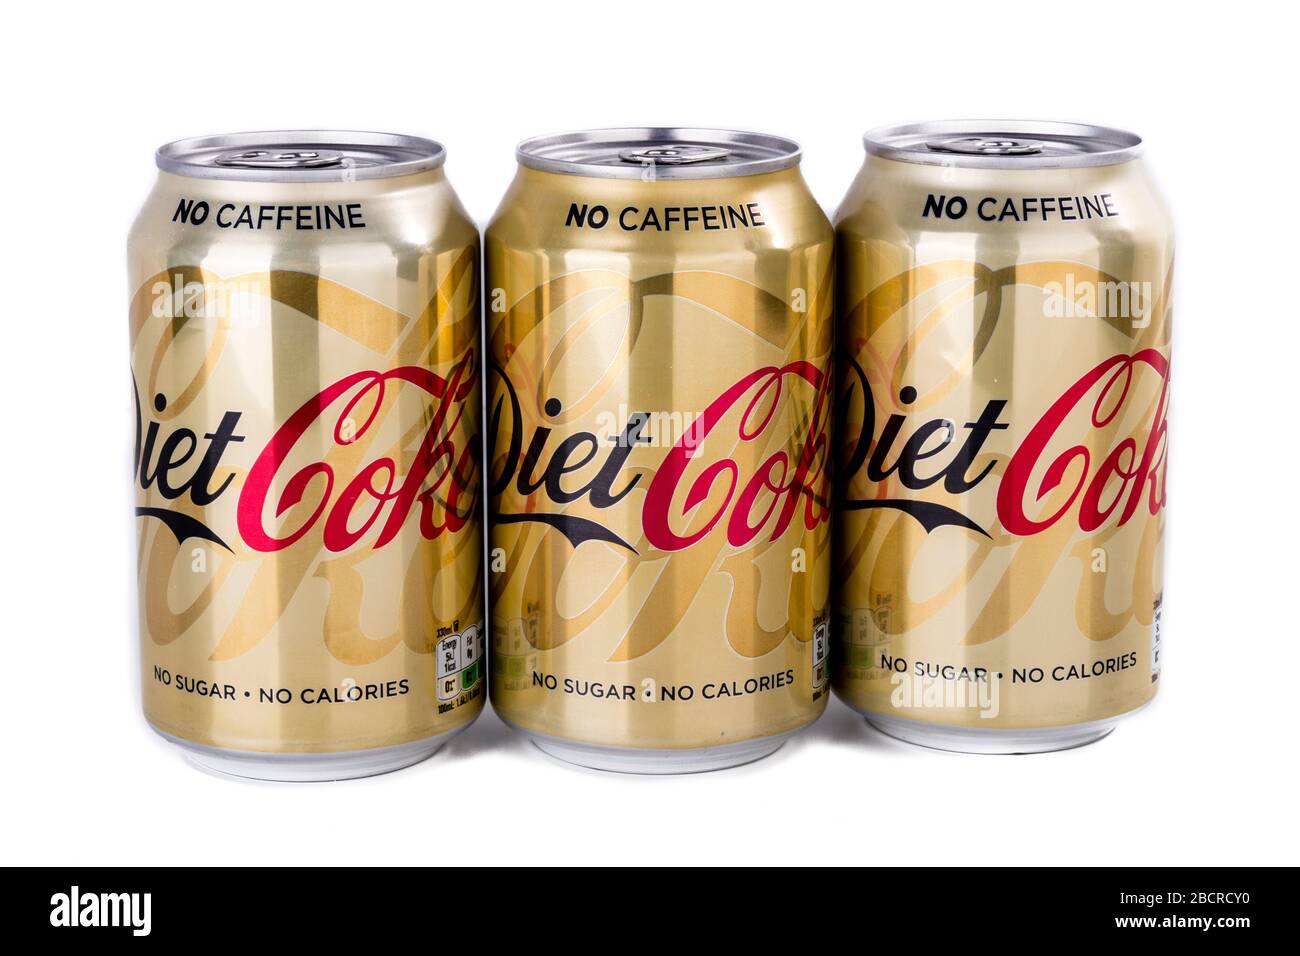 Dieta Coca Cola lattine, no caffeina Coca Cola, no zucchero, no calorie,  coke cola, coke, caffeina libera Coca Cola, Coca Cola Cola lattine, lattine,  lattine, marca, tre Foto stock - Alamy